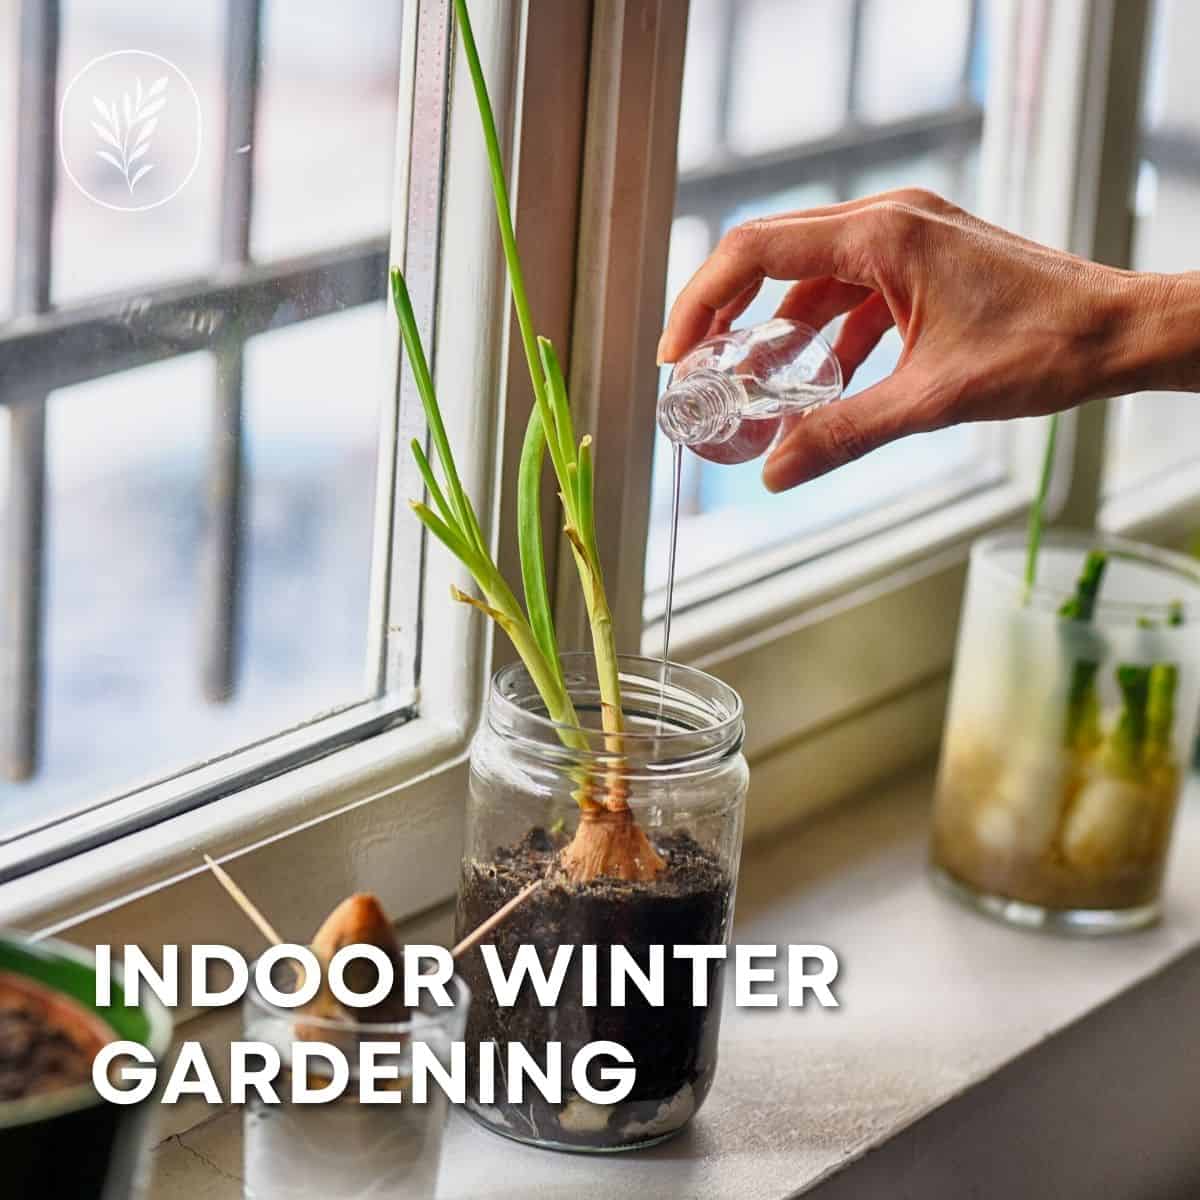 Indoor winter gardening via @home4theharvest